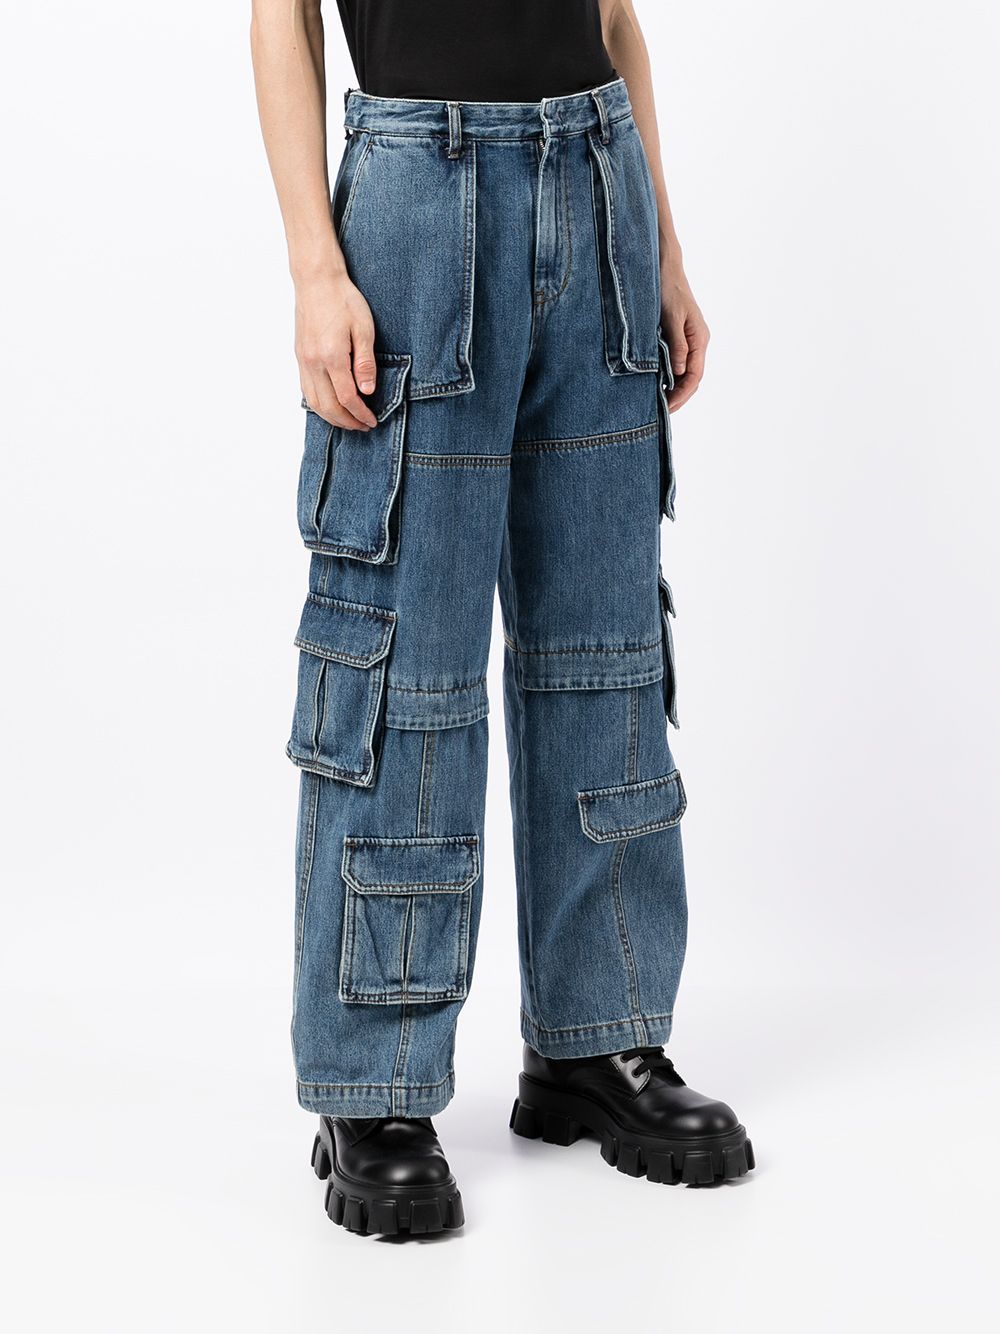 фото Juun.j джинсовые брюки карго с карманами